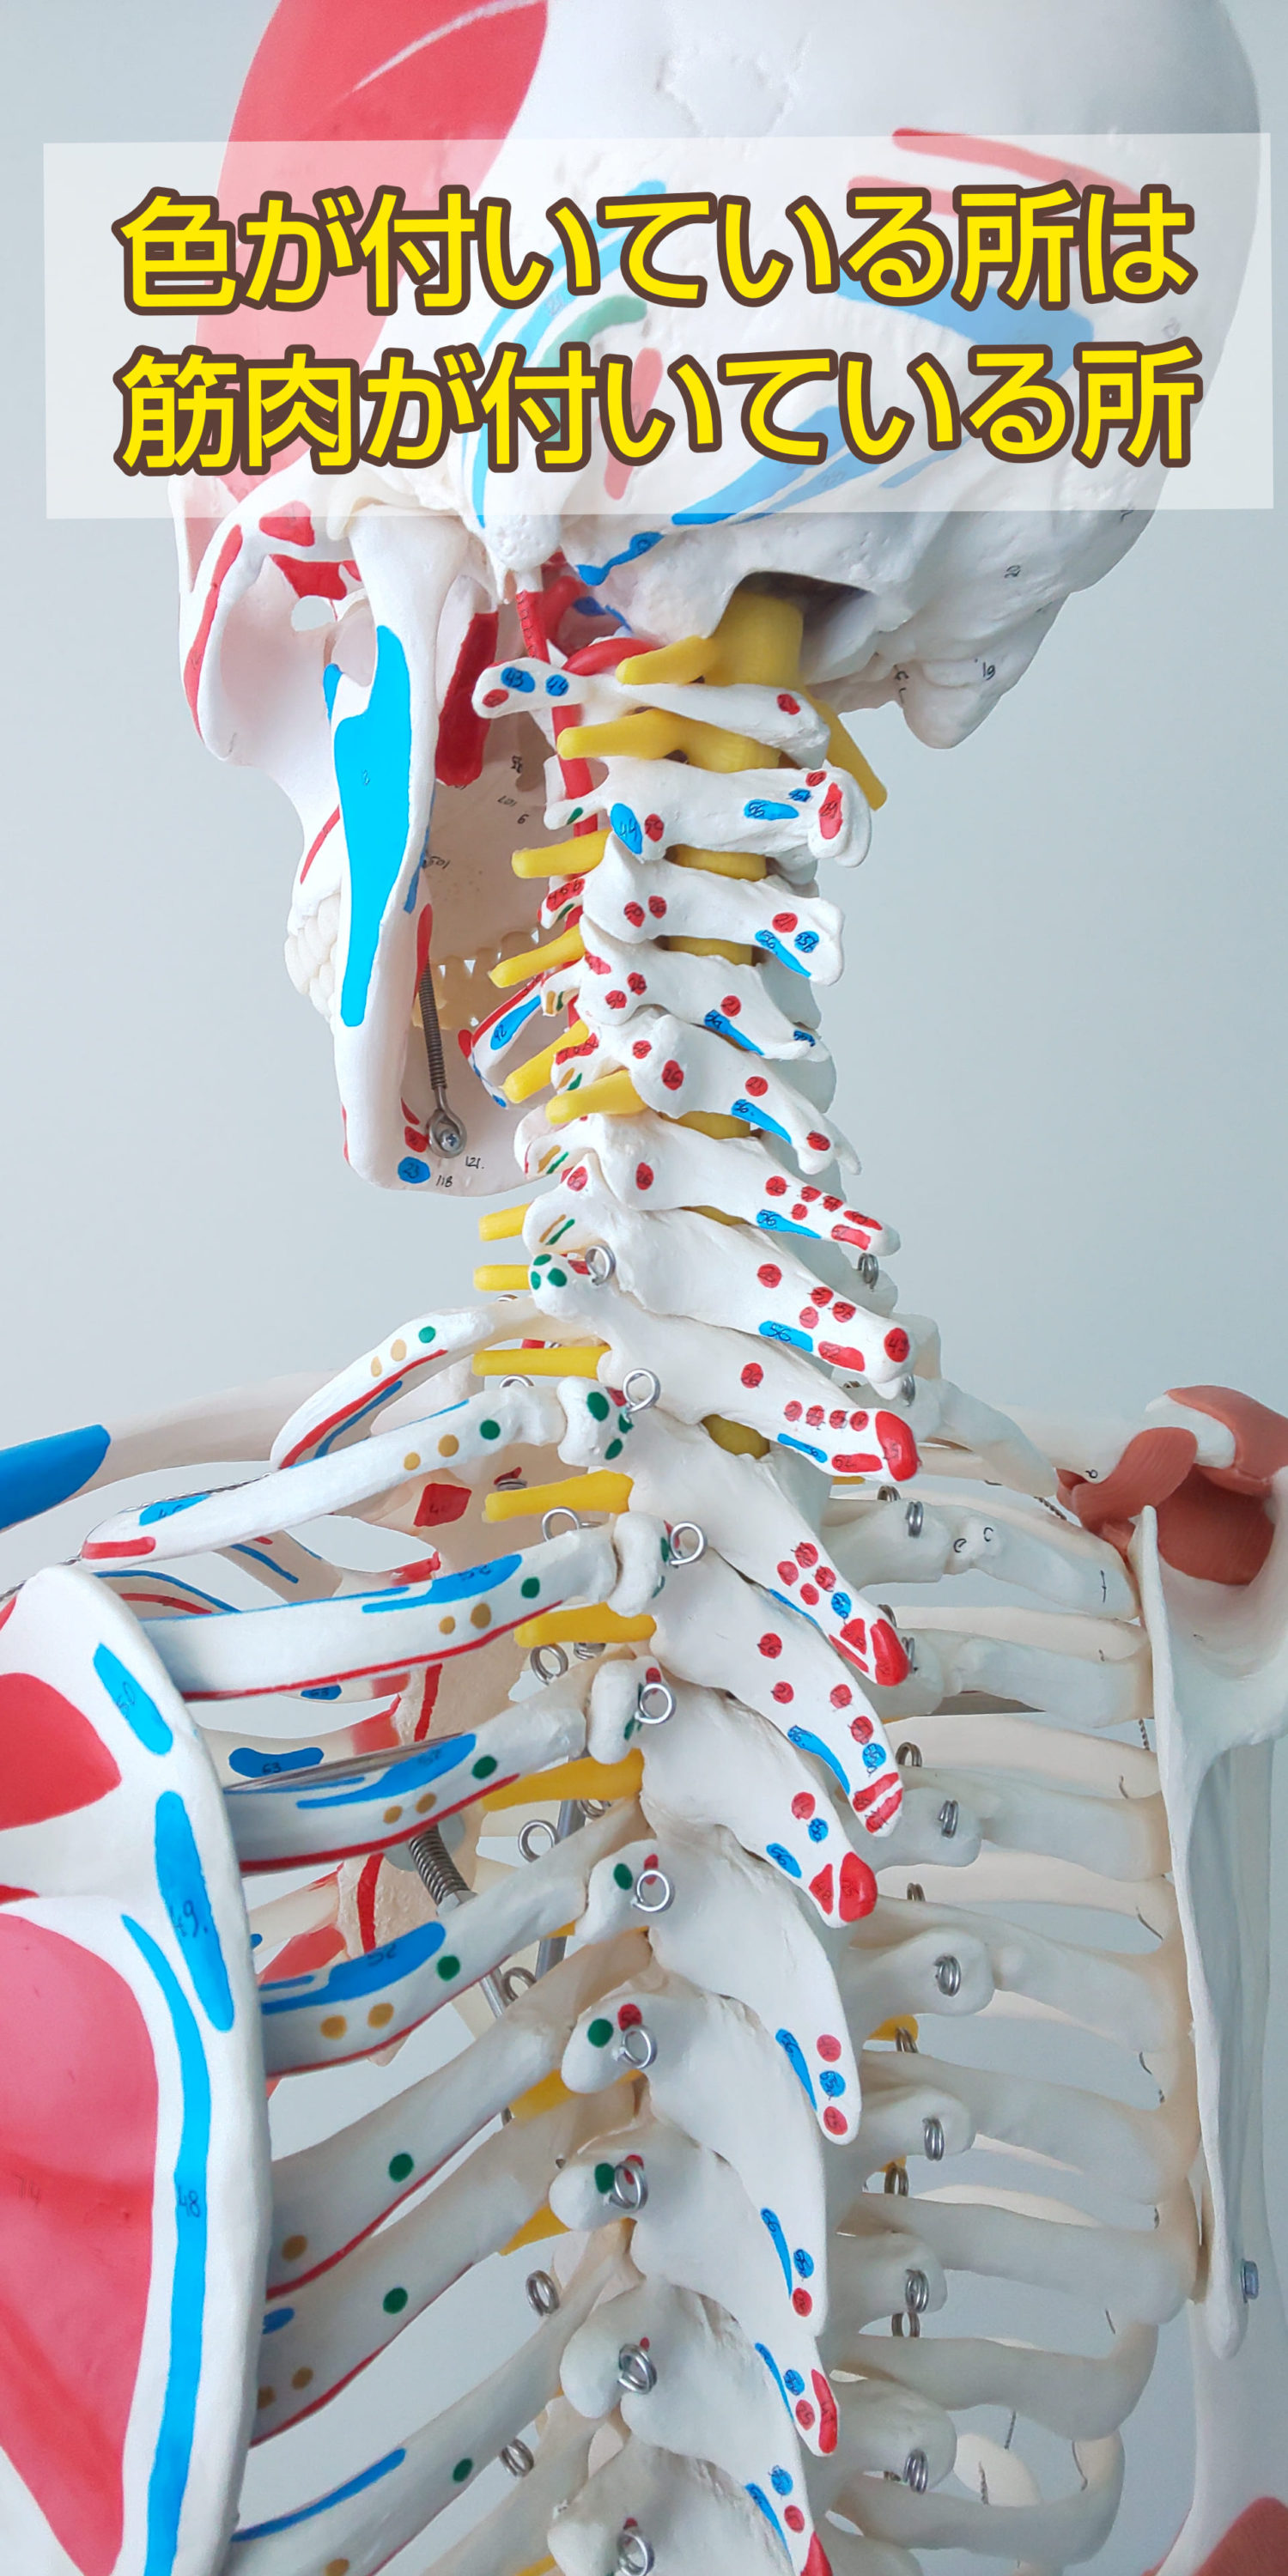 脊柱肋骨の骨模型 加工済